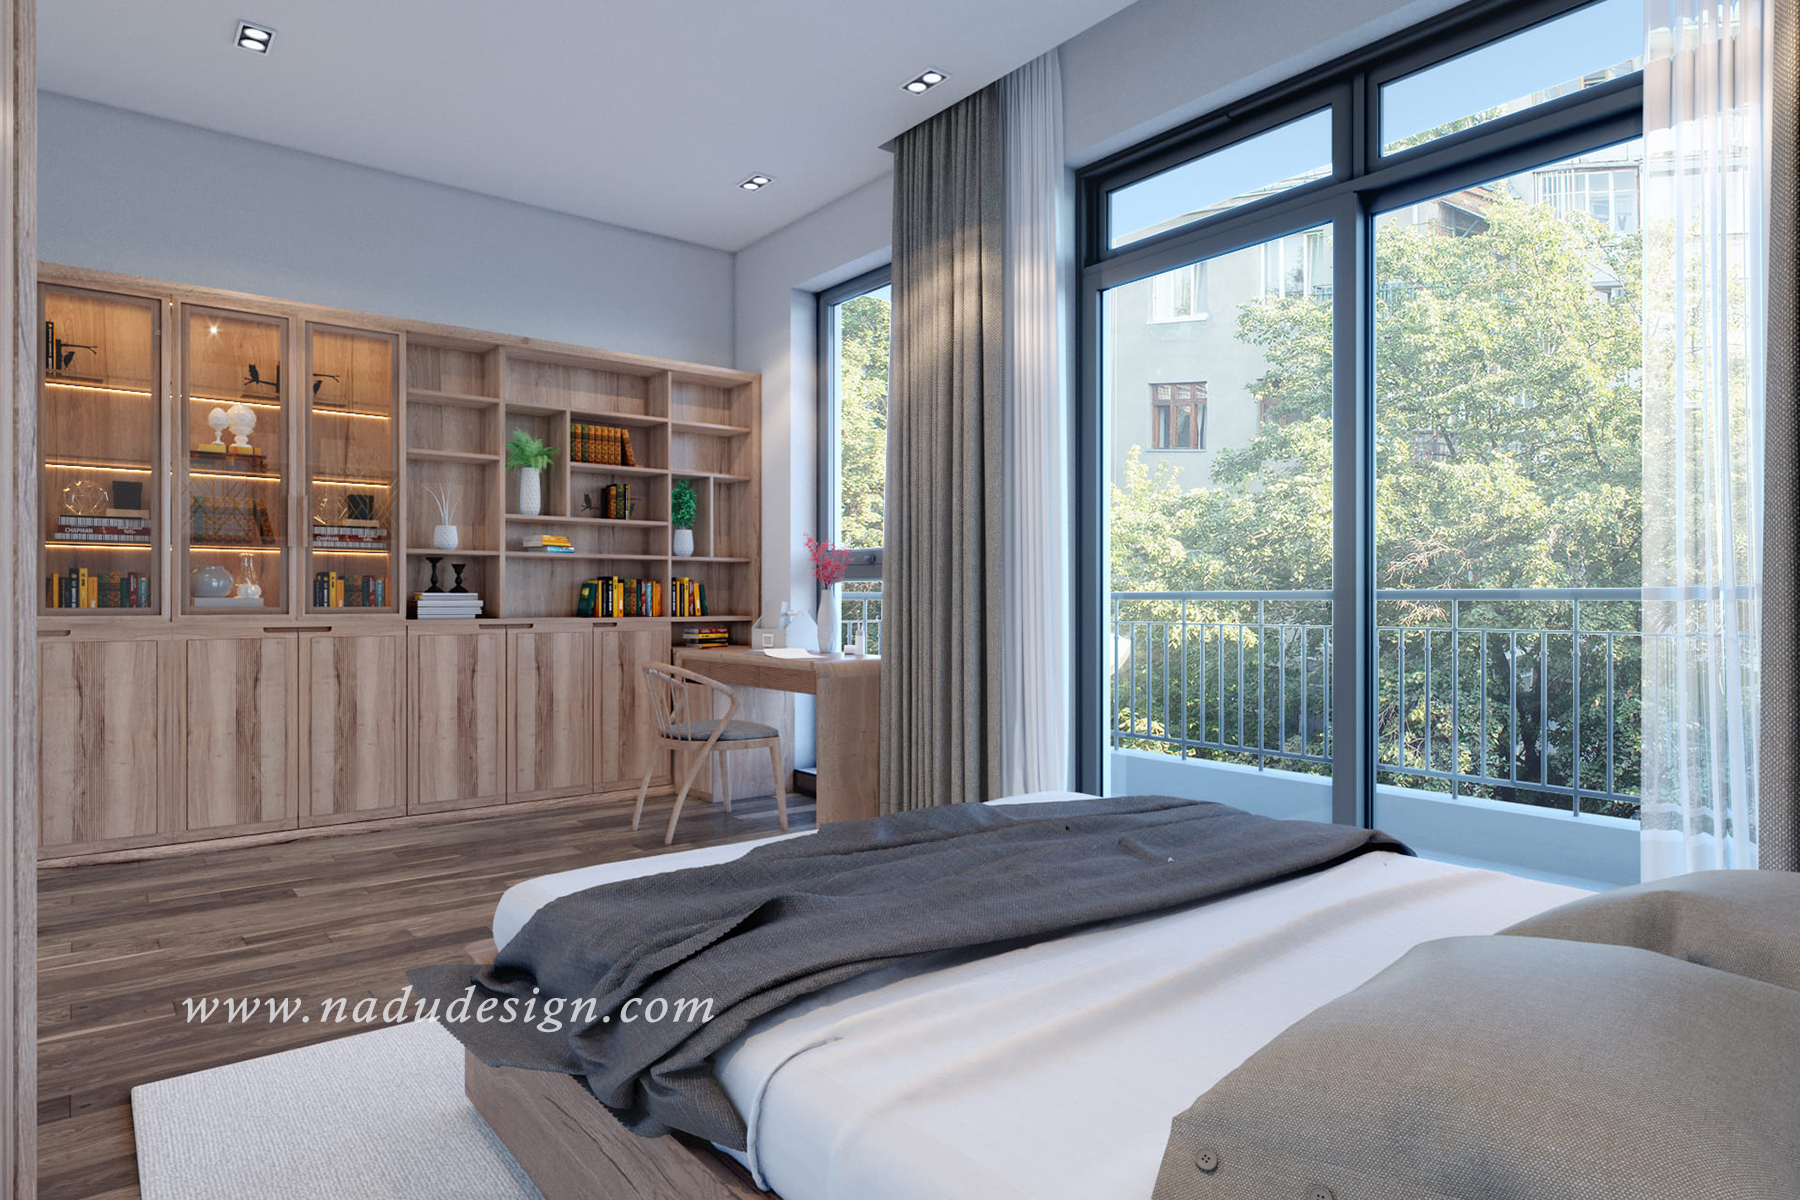 Thiết kế phòng ngủ 30m2 đẹp sẽ đem lại cho bạn sự hài lòng và thoải mái khi trải nghiệm giấc ngủ. Với kiến trúc hiện đại và trang trí tinh tế, phòng ngủ của bạn sẽ trở nên rực rỡ hơn bao giờ hết, thoả mãn mọi mong muốn của chủ nhân.